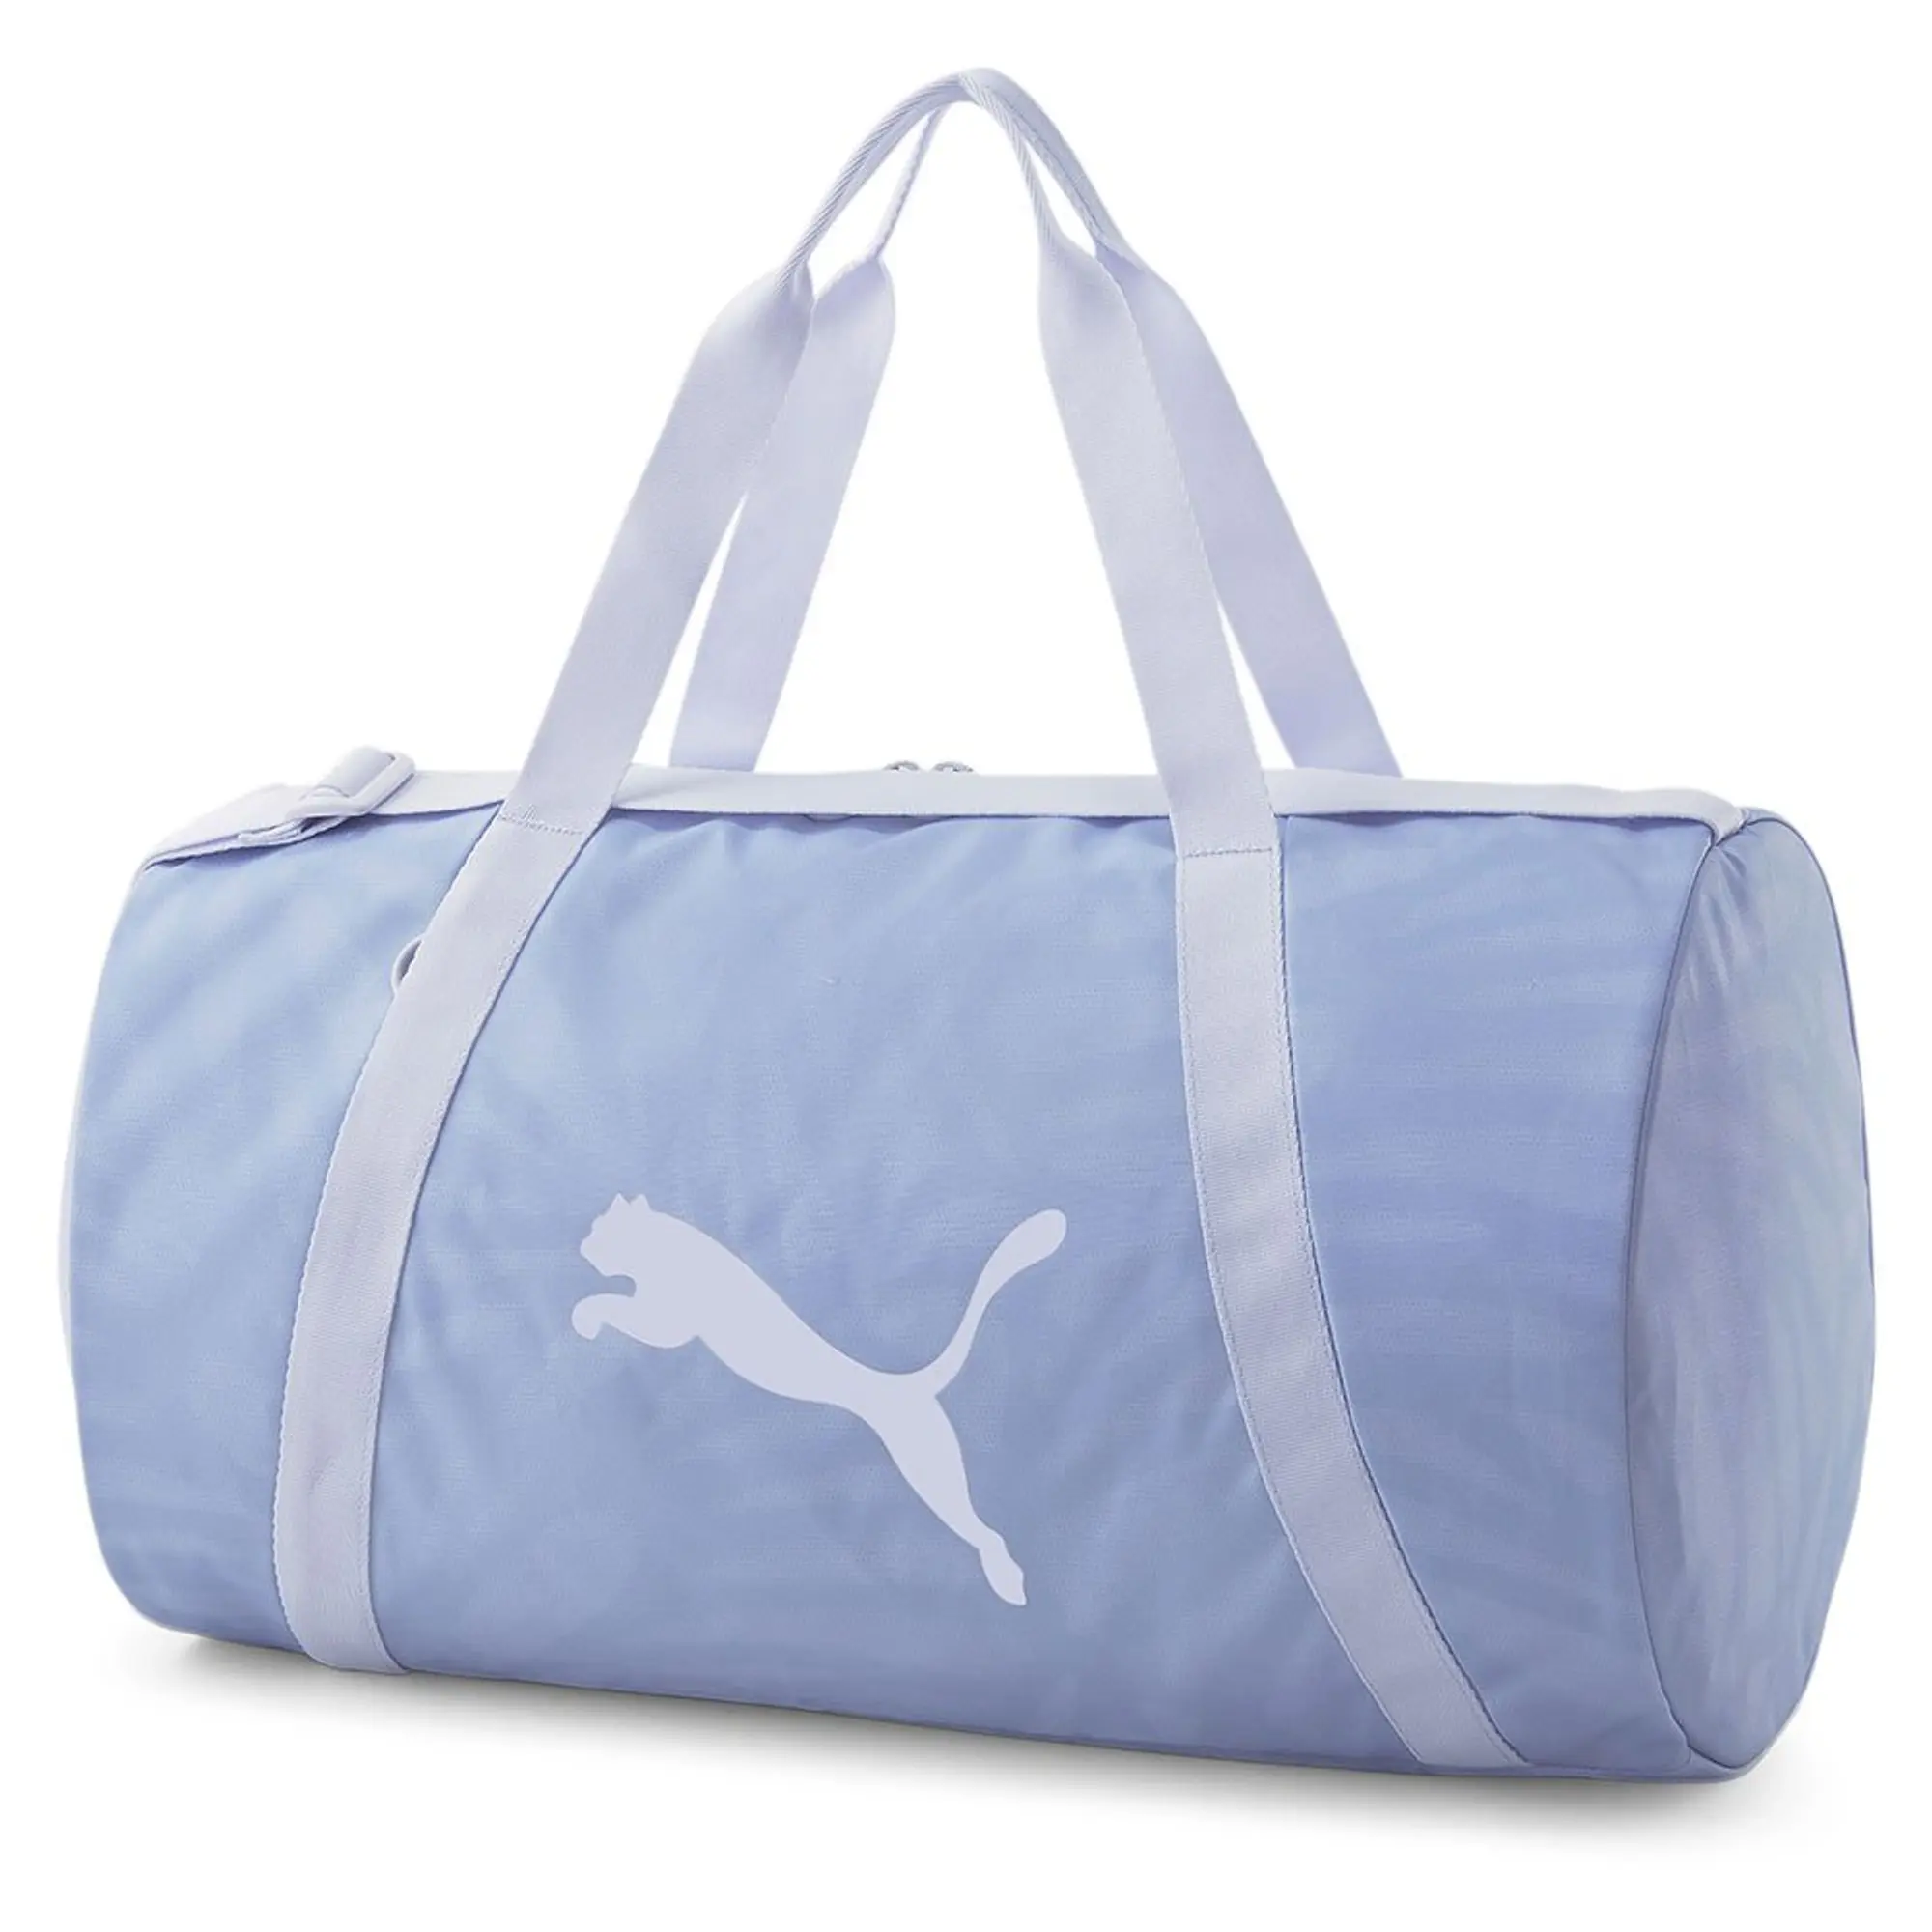 Puma At Essentials Barrel No Bag -